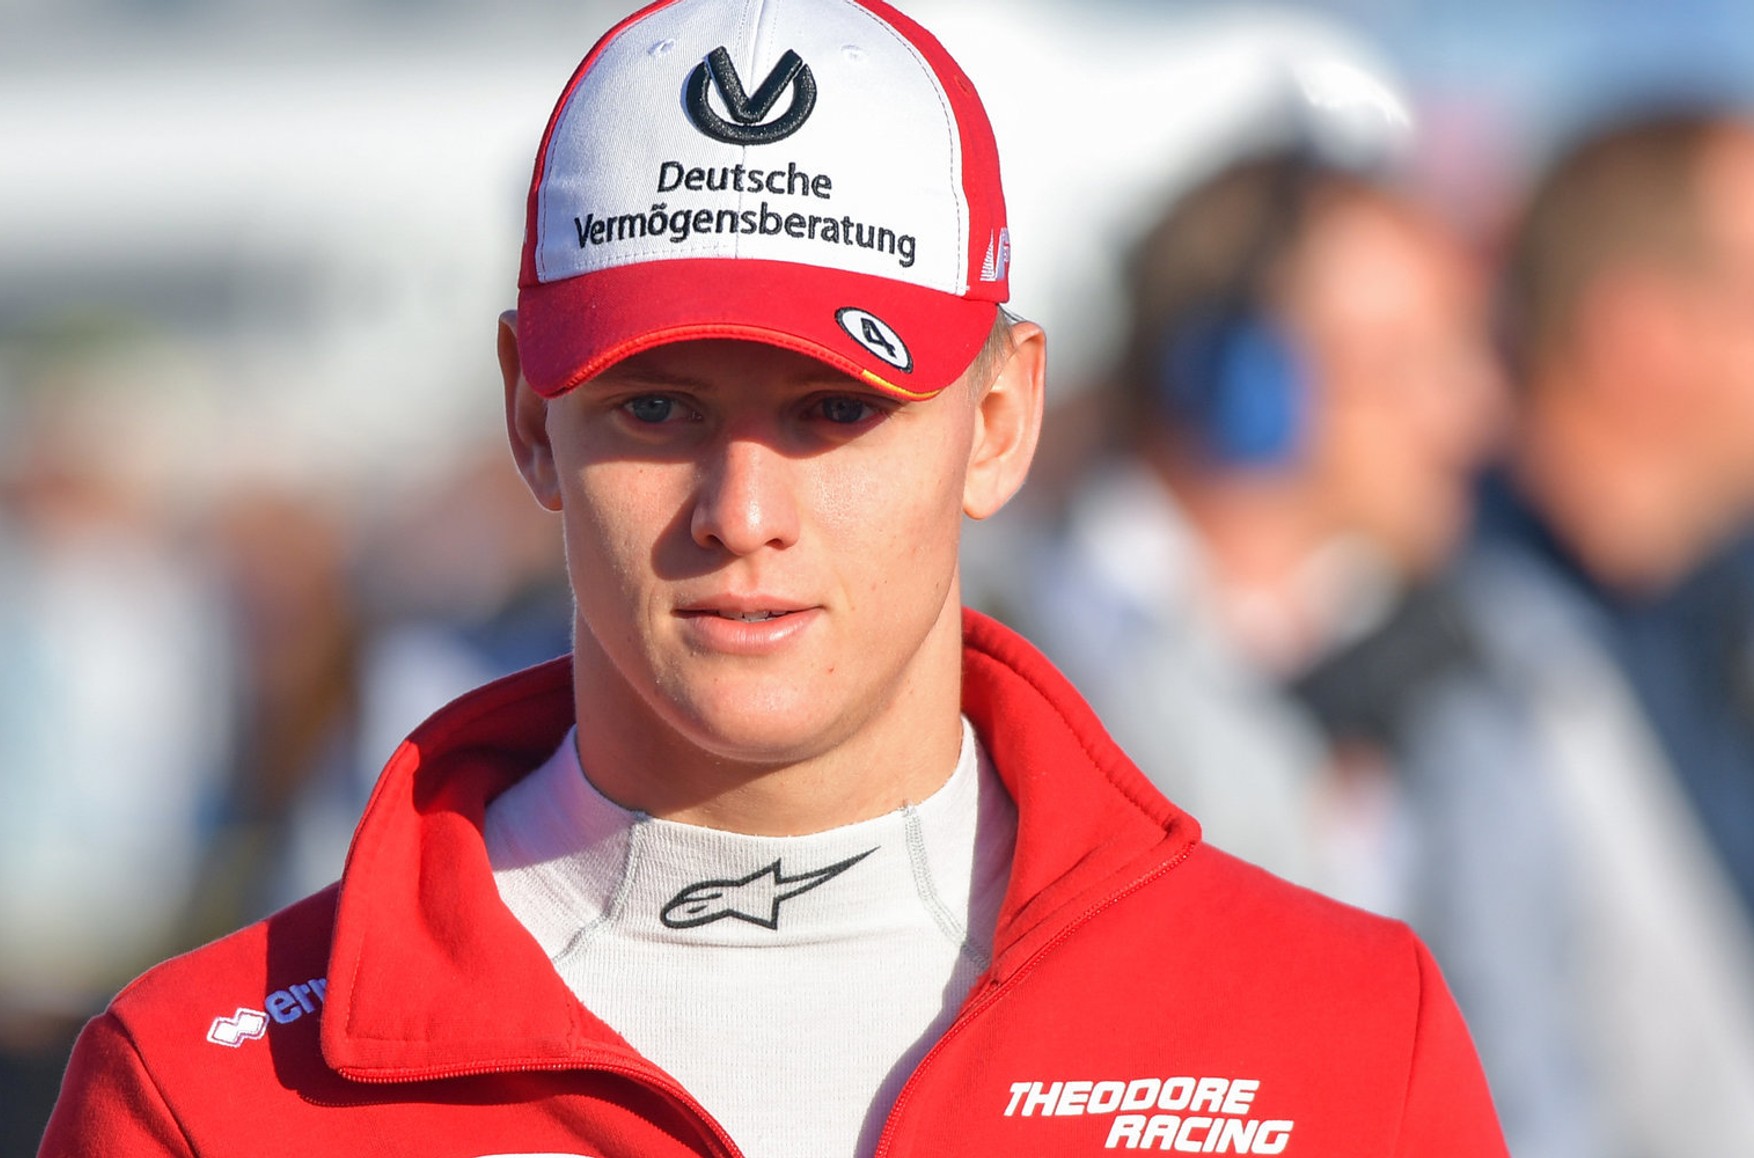 Син Міхаеля Шумахера дебютує в «Формулі-1» в наступному сезоні, він виступить за команду Haas